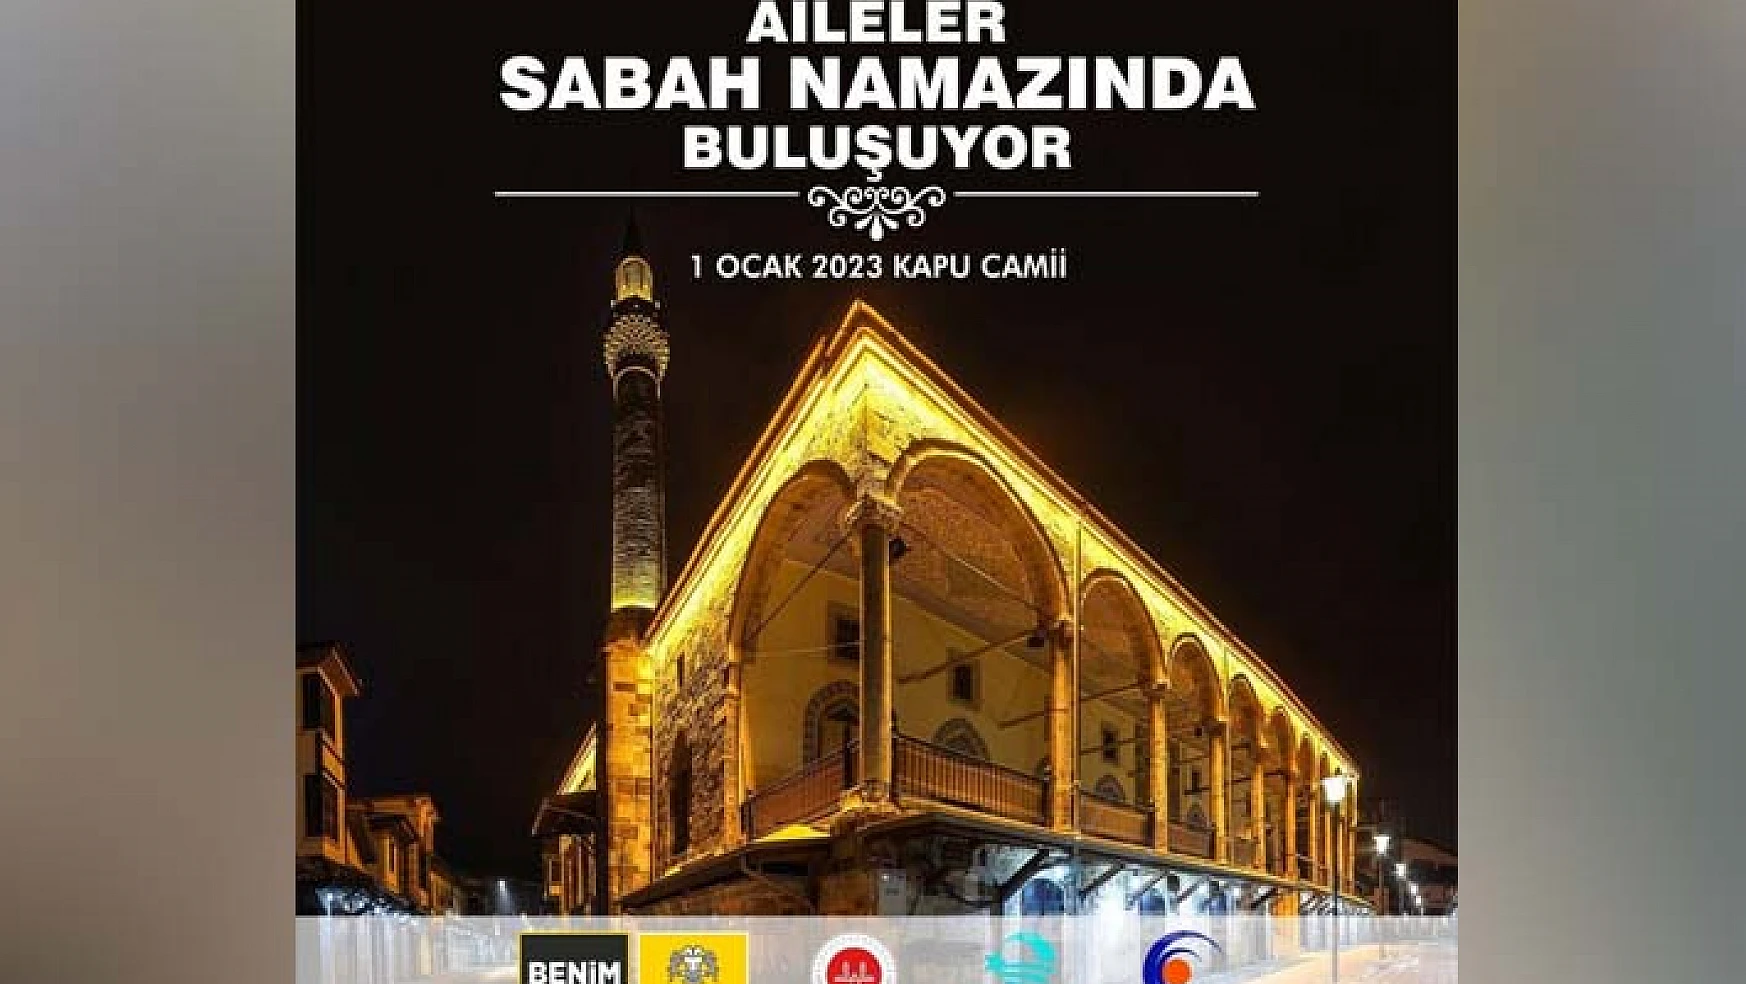 Konya'da yeni yılın ilk günü anlamlı etkinlik